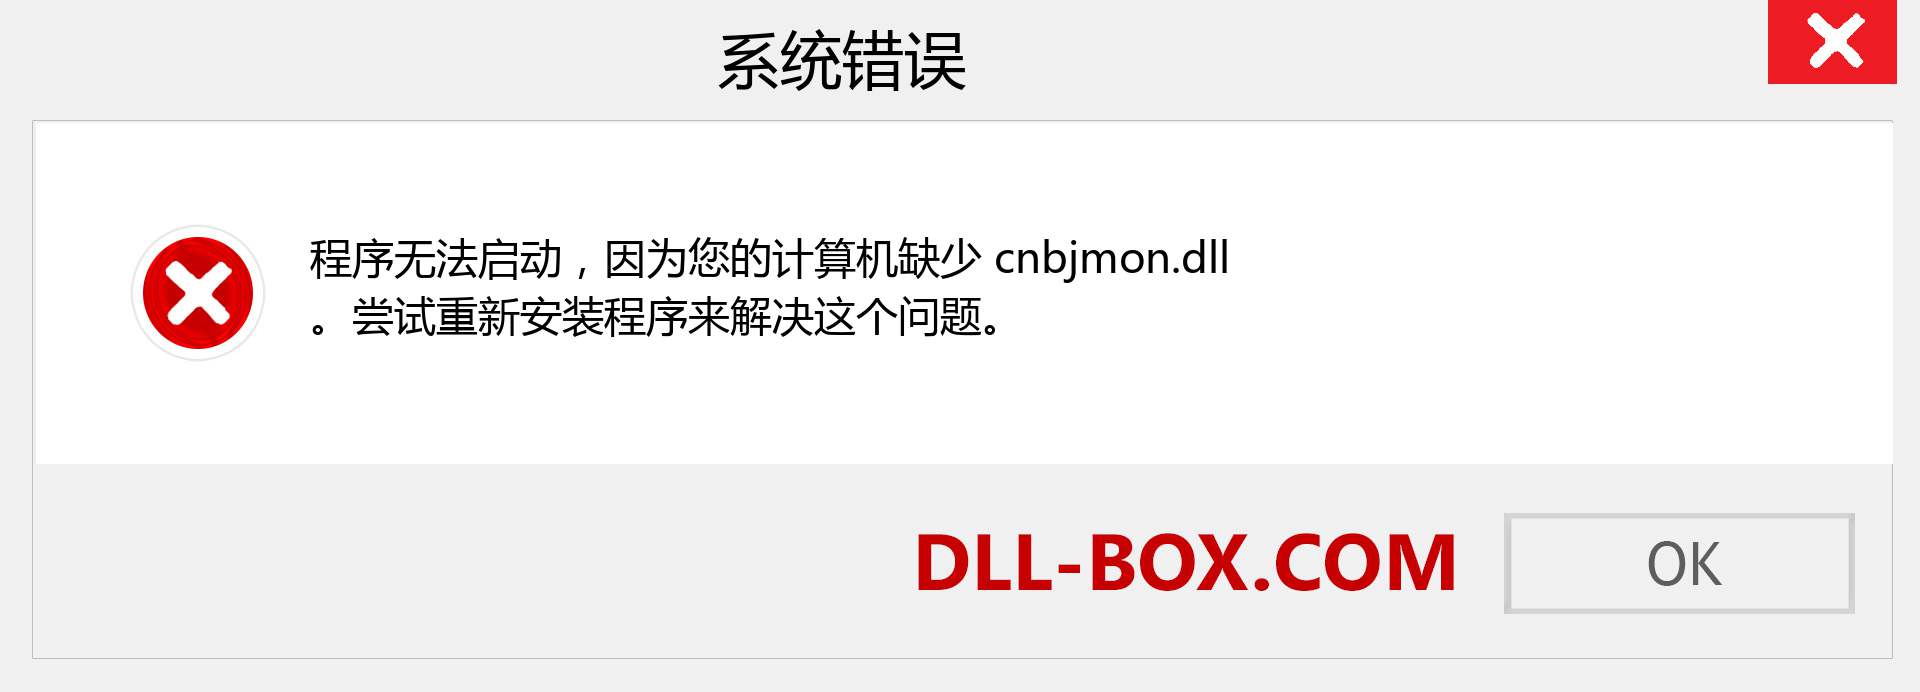 cnbjmon.dll 文件丢失？。 适用于 Windows 7、8、10 的下载 - 修复 Windows、照片、图像上的 cnbjmon dll 丢失错误